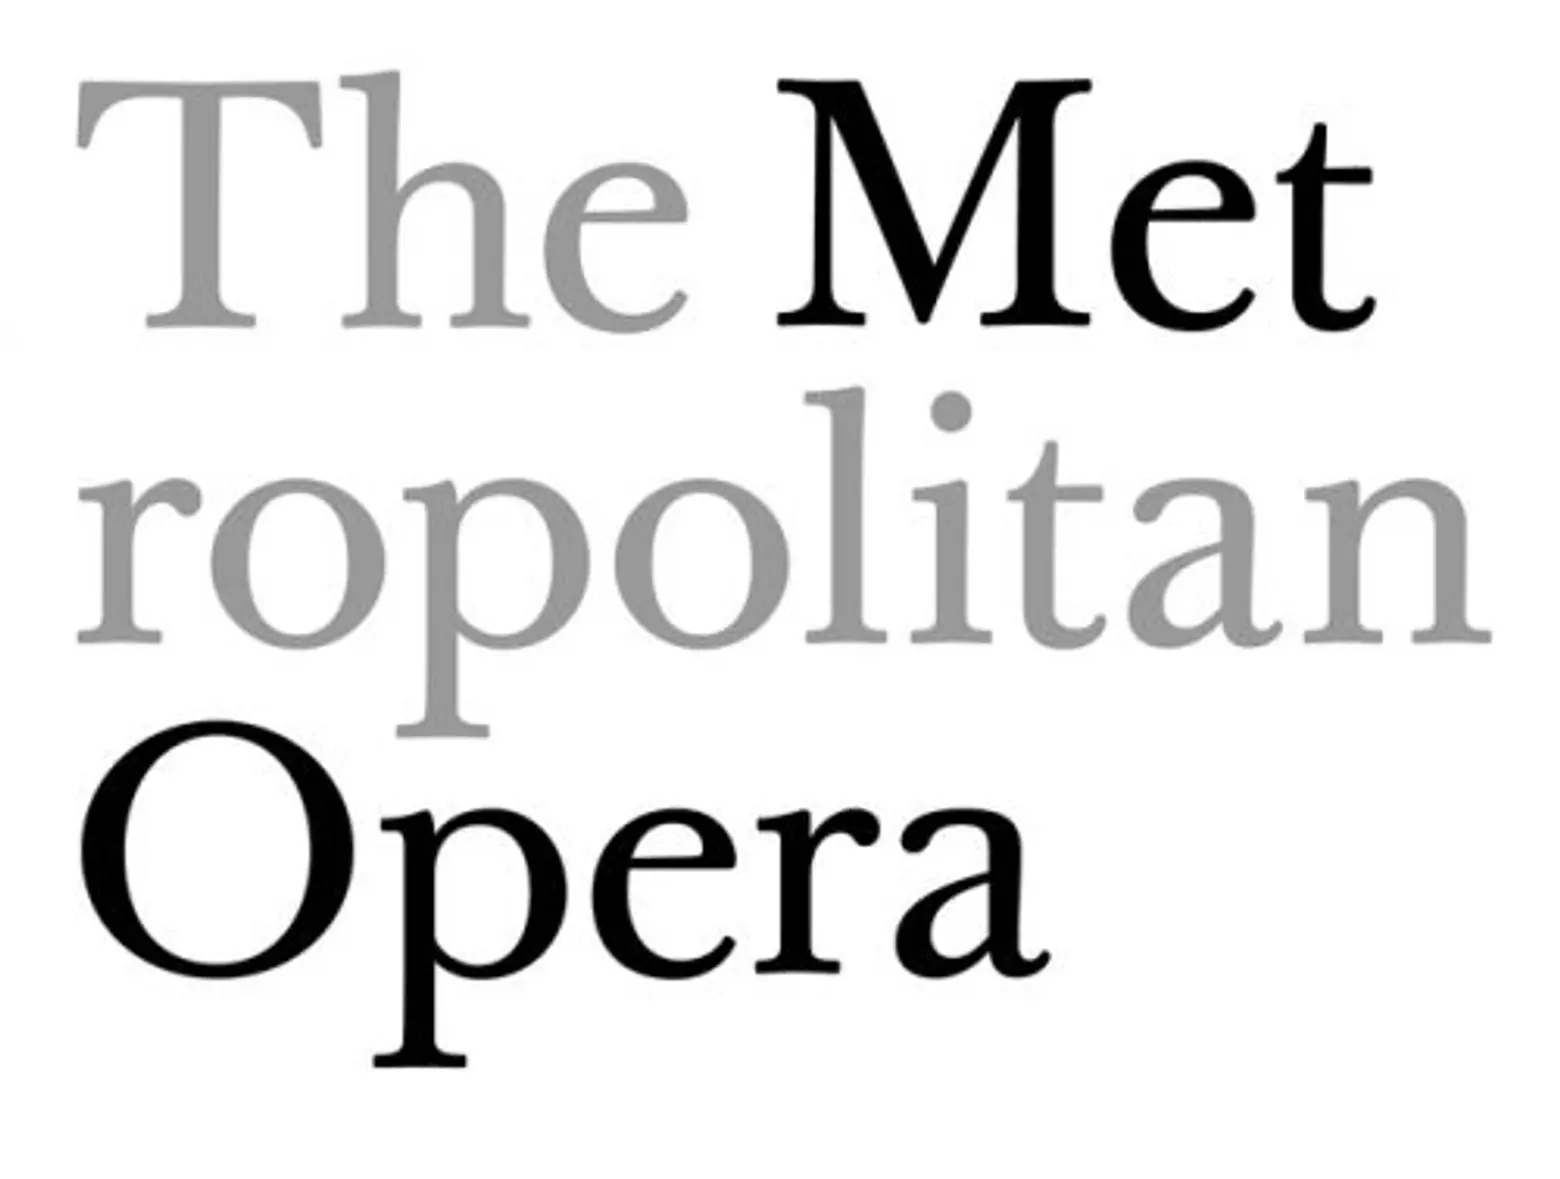 Scher's work for the MET Opera's logo